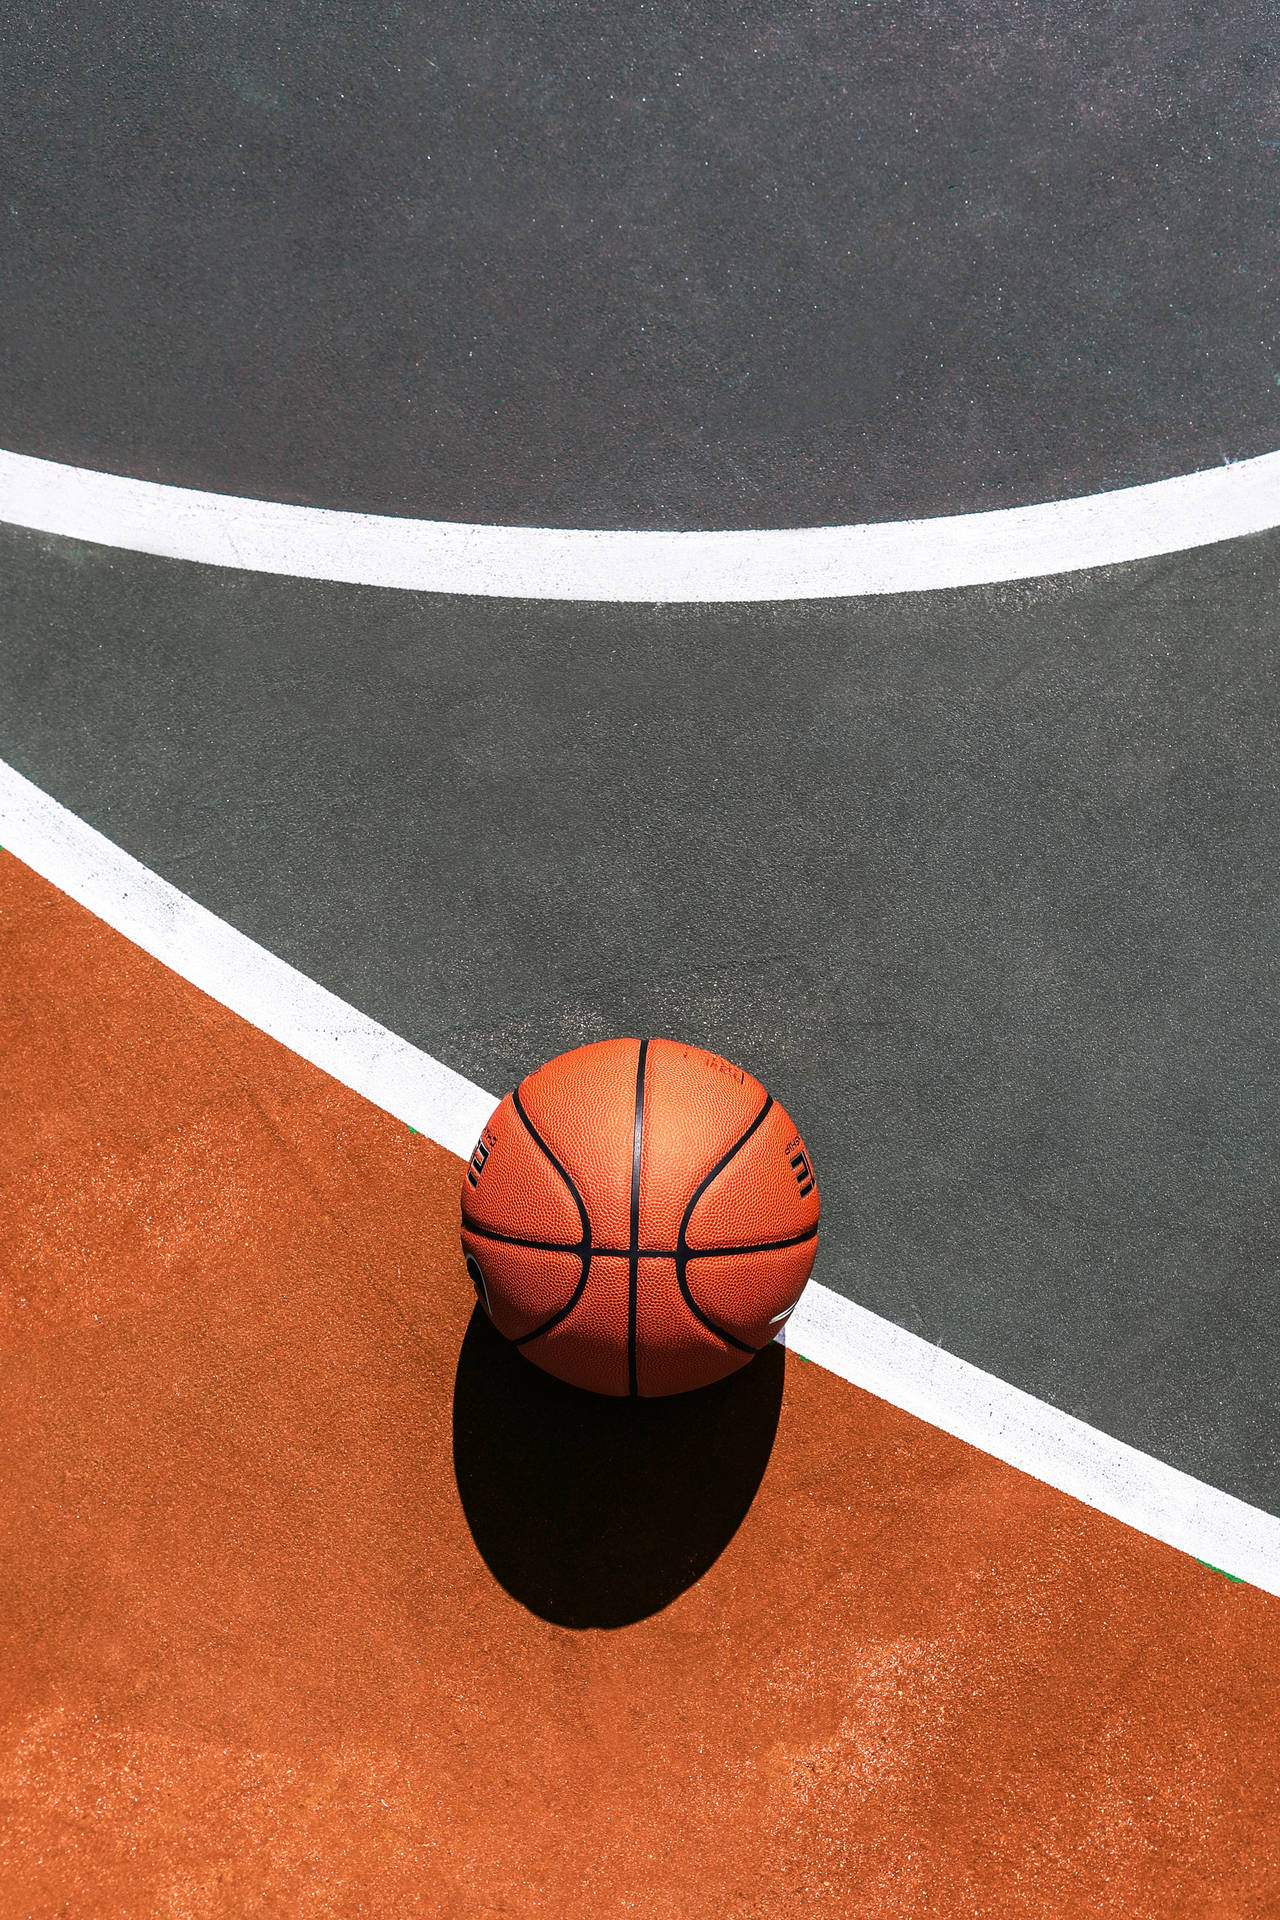 Basketball 3130X4695 wallpaper